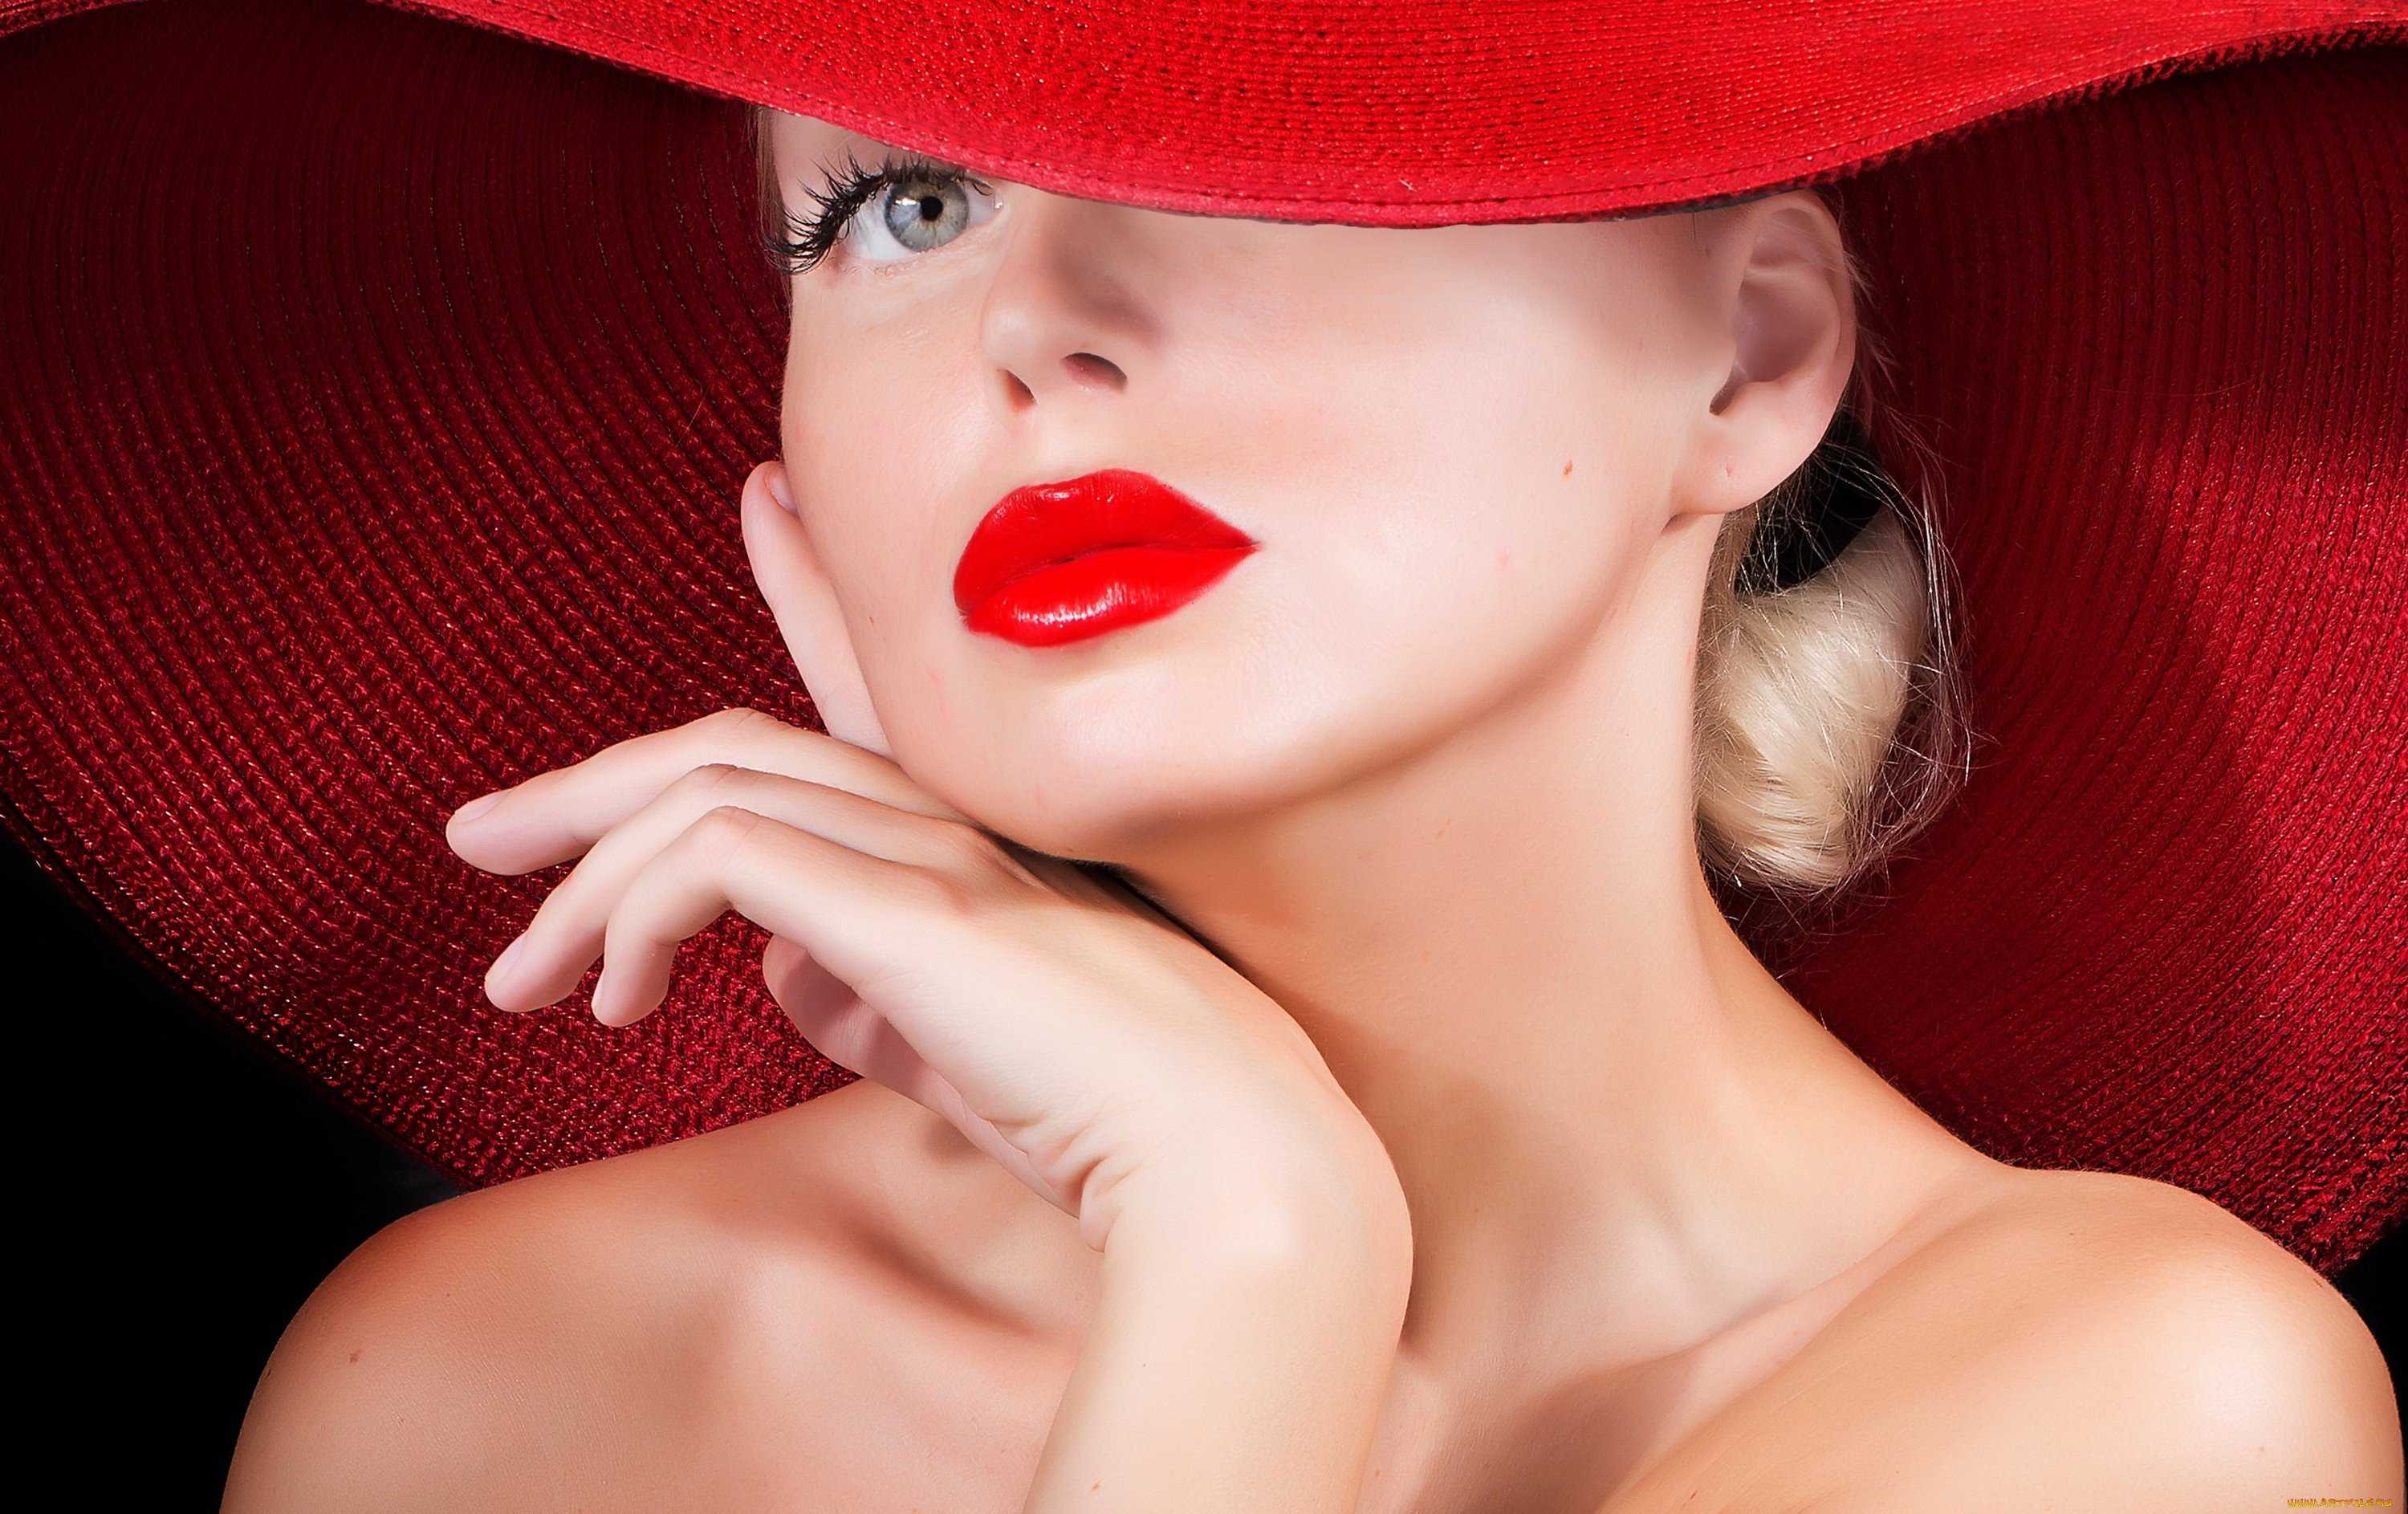 Реклама шляп. Девушка в шляпе. Девушка в красной шляпе. Красивые дамы в шляпках. Красивая женщина в шляпе.